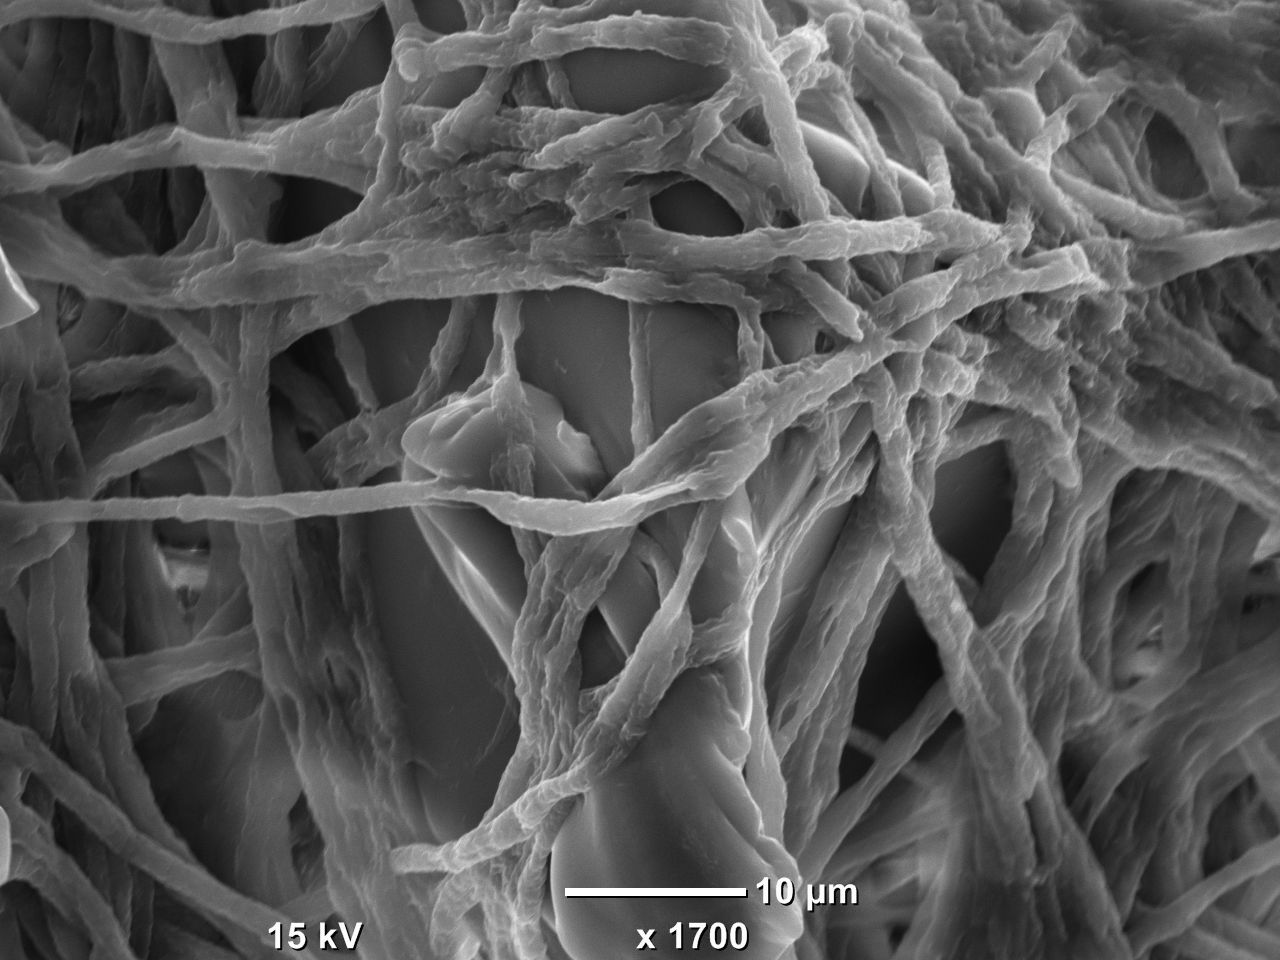 Elektronenmikroskopische Aufnahme von Fusarium auf einem Kunststoffpartikel. Fusarium ist ein Pilz, der Kunststoffpolymere abbauen kann. Bild: Sabreen Samuel Ibrahim Dawoud, IGB